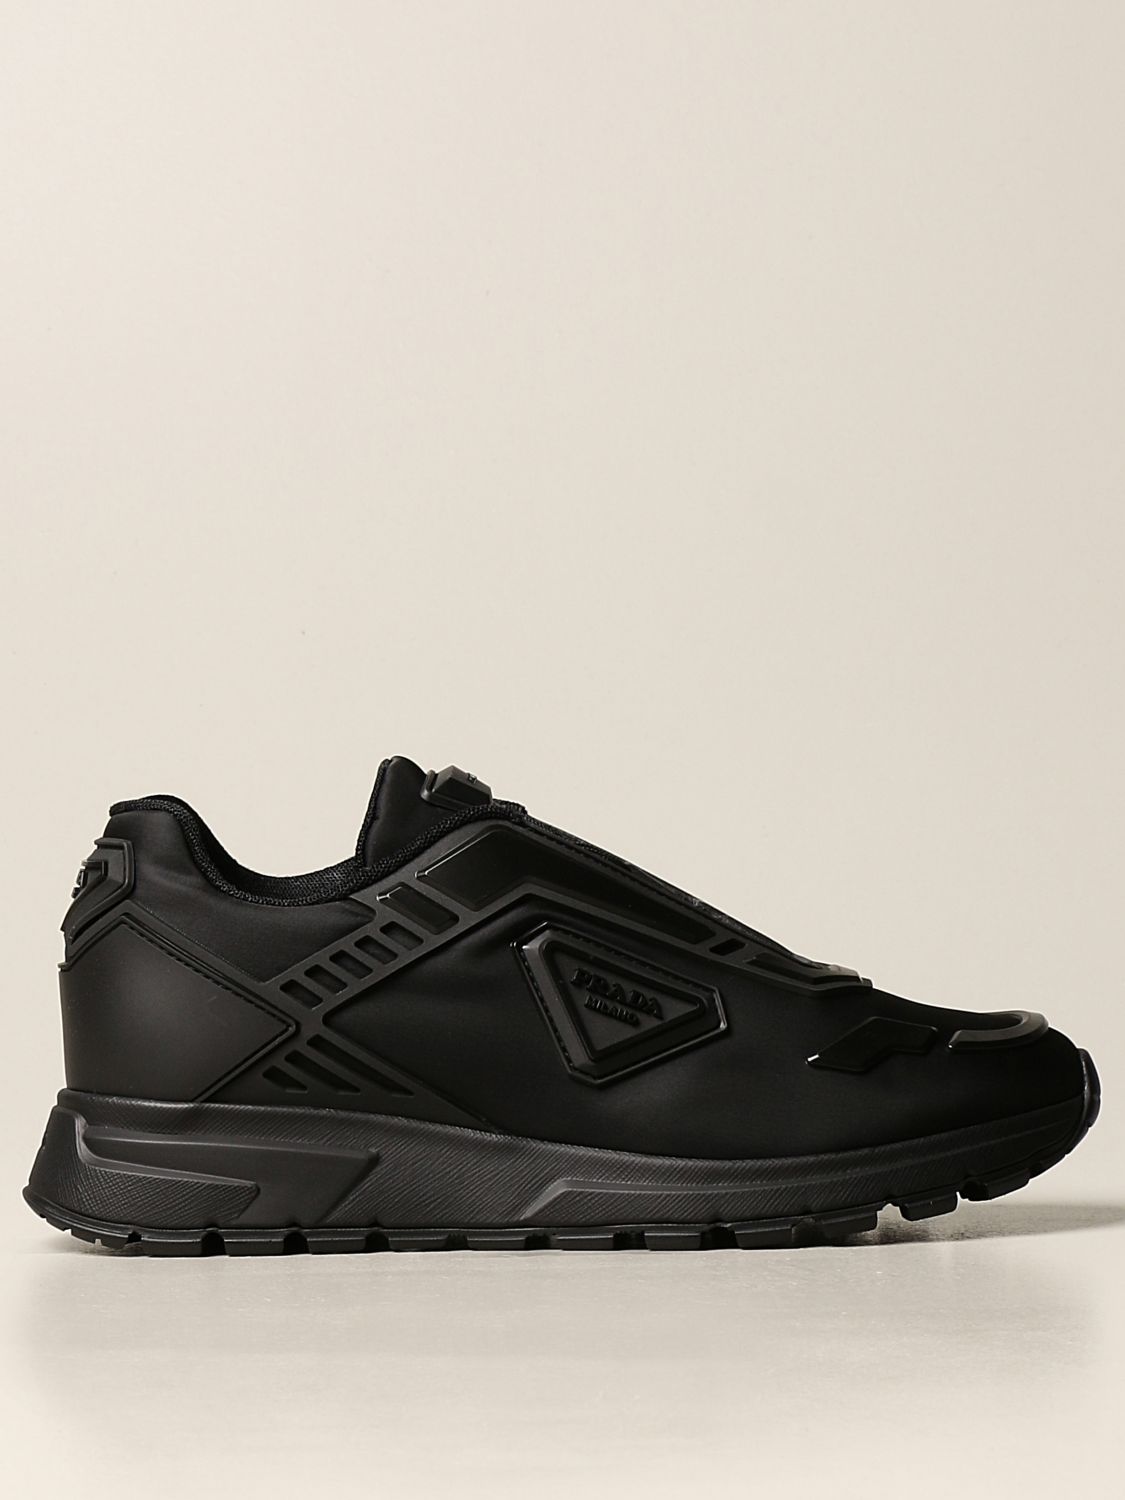 black and grey prada sneakers